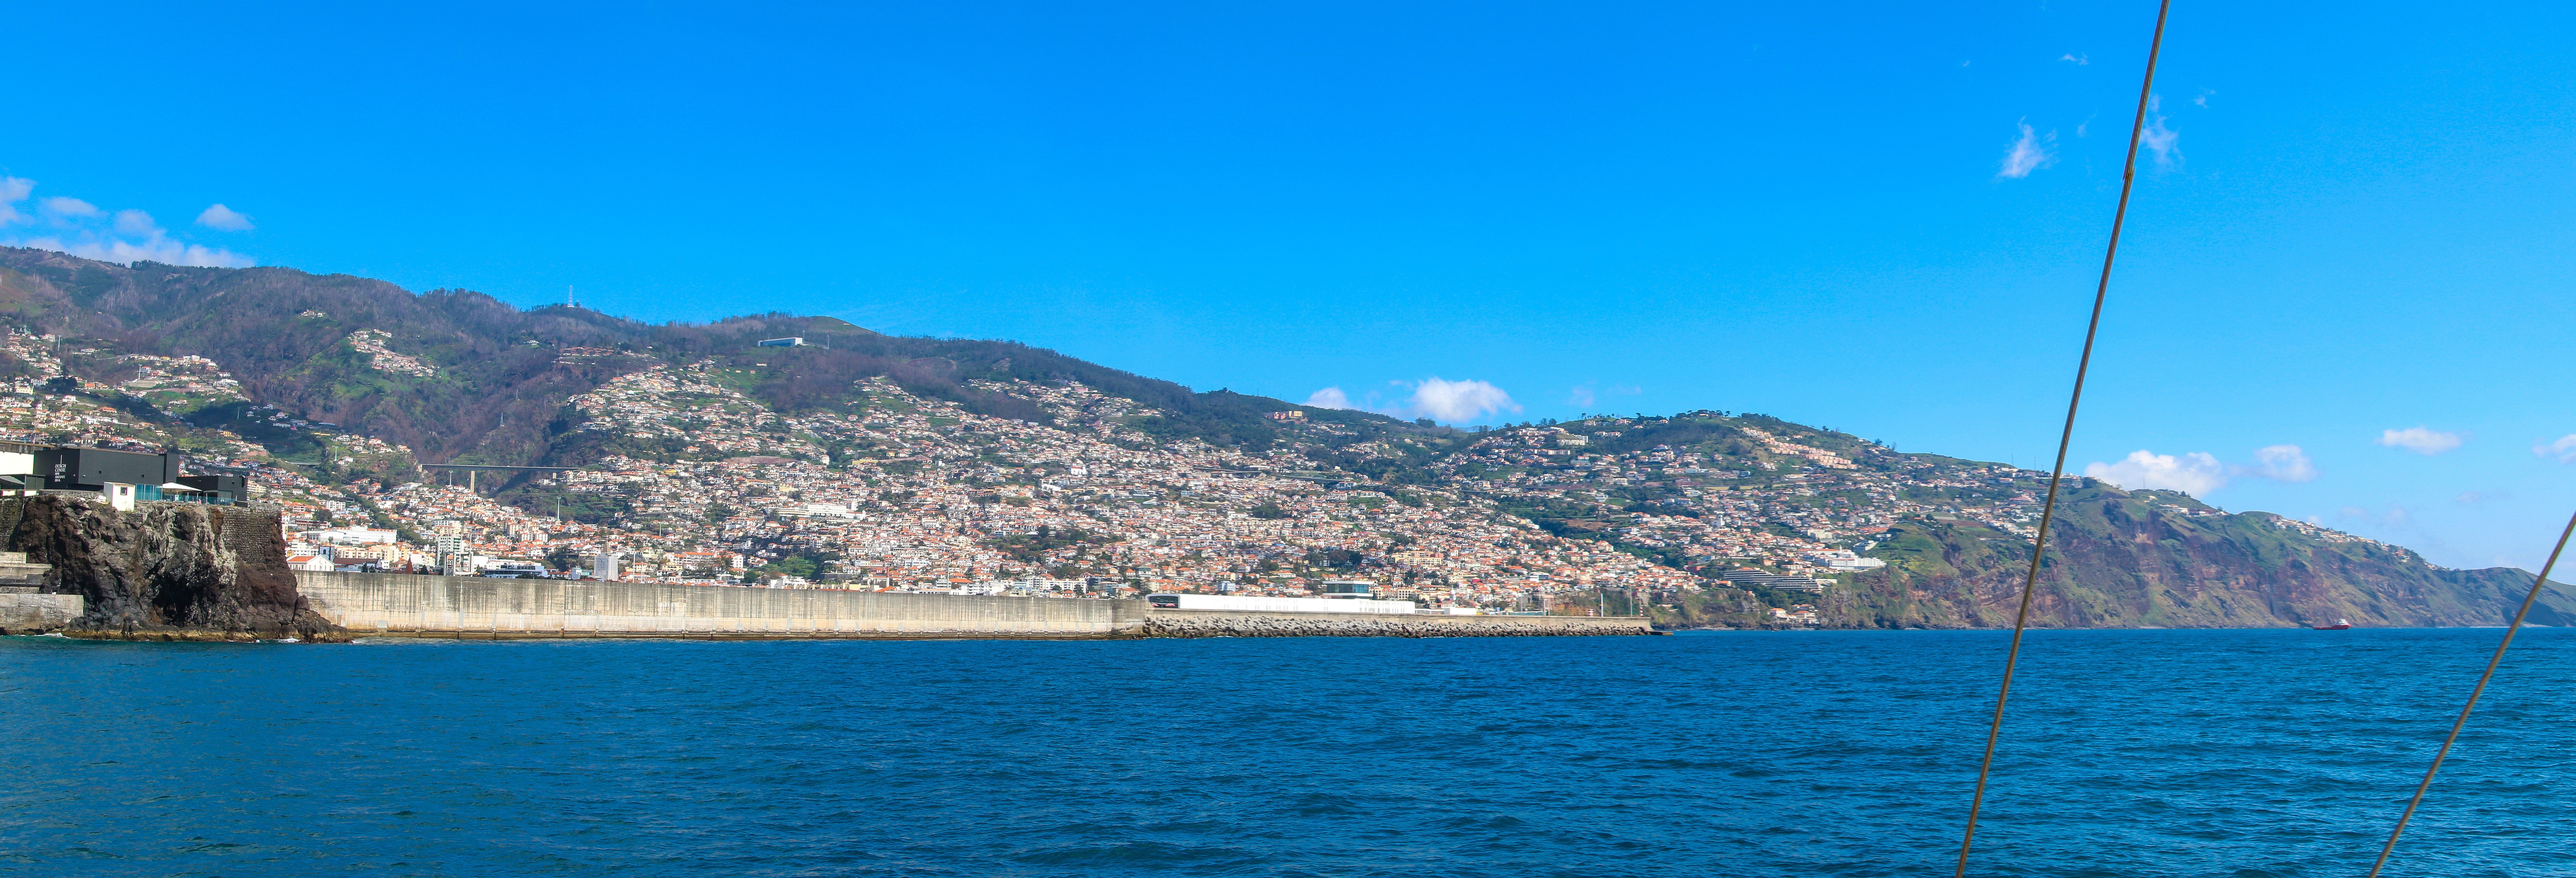 Passeio de barco pela costa sul da Madeira